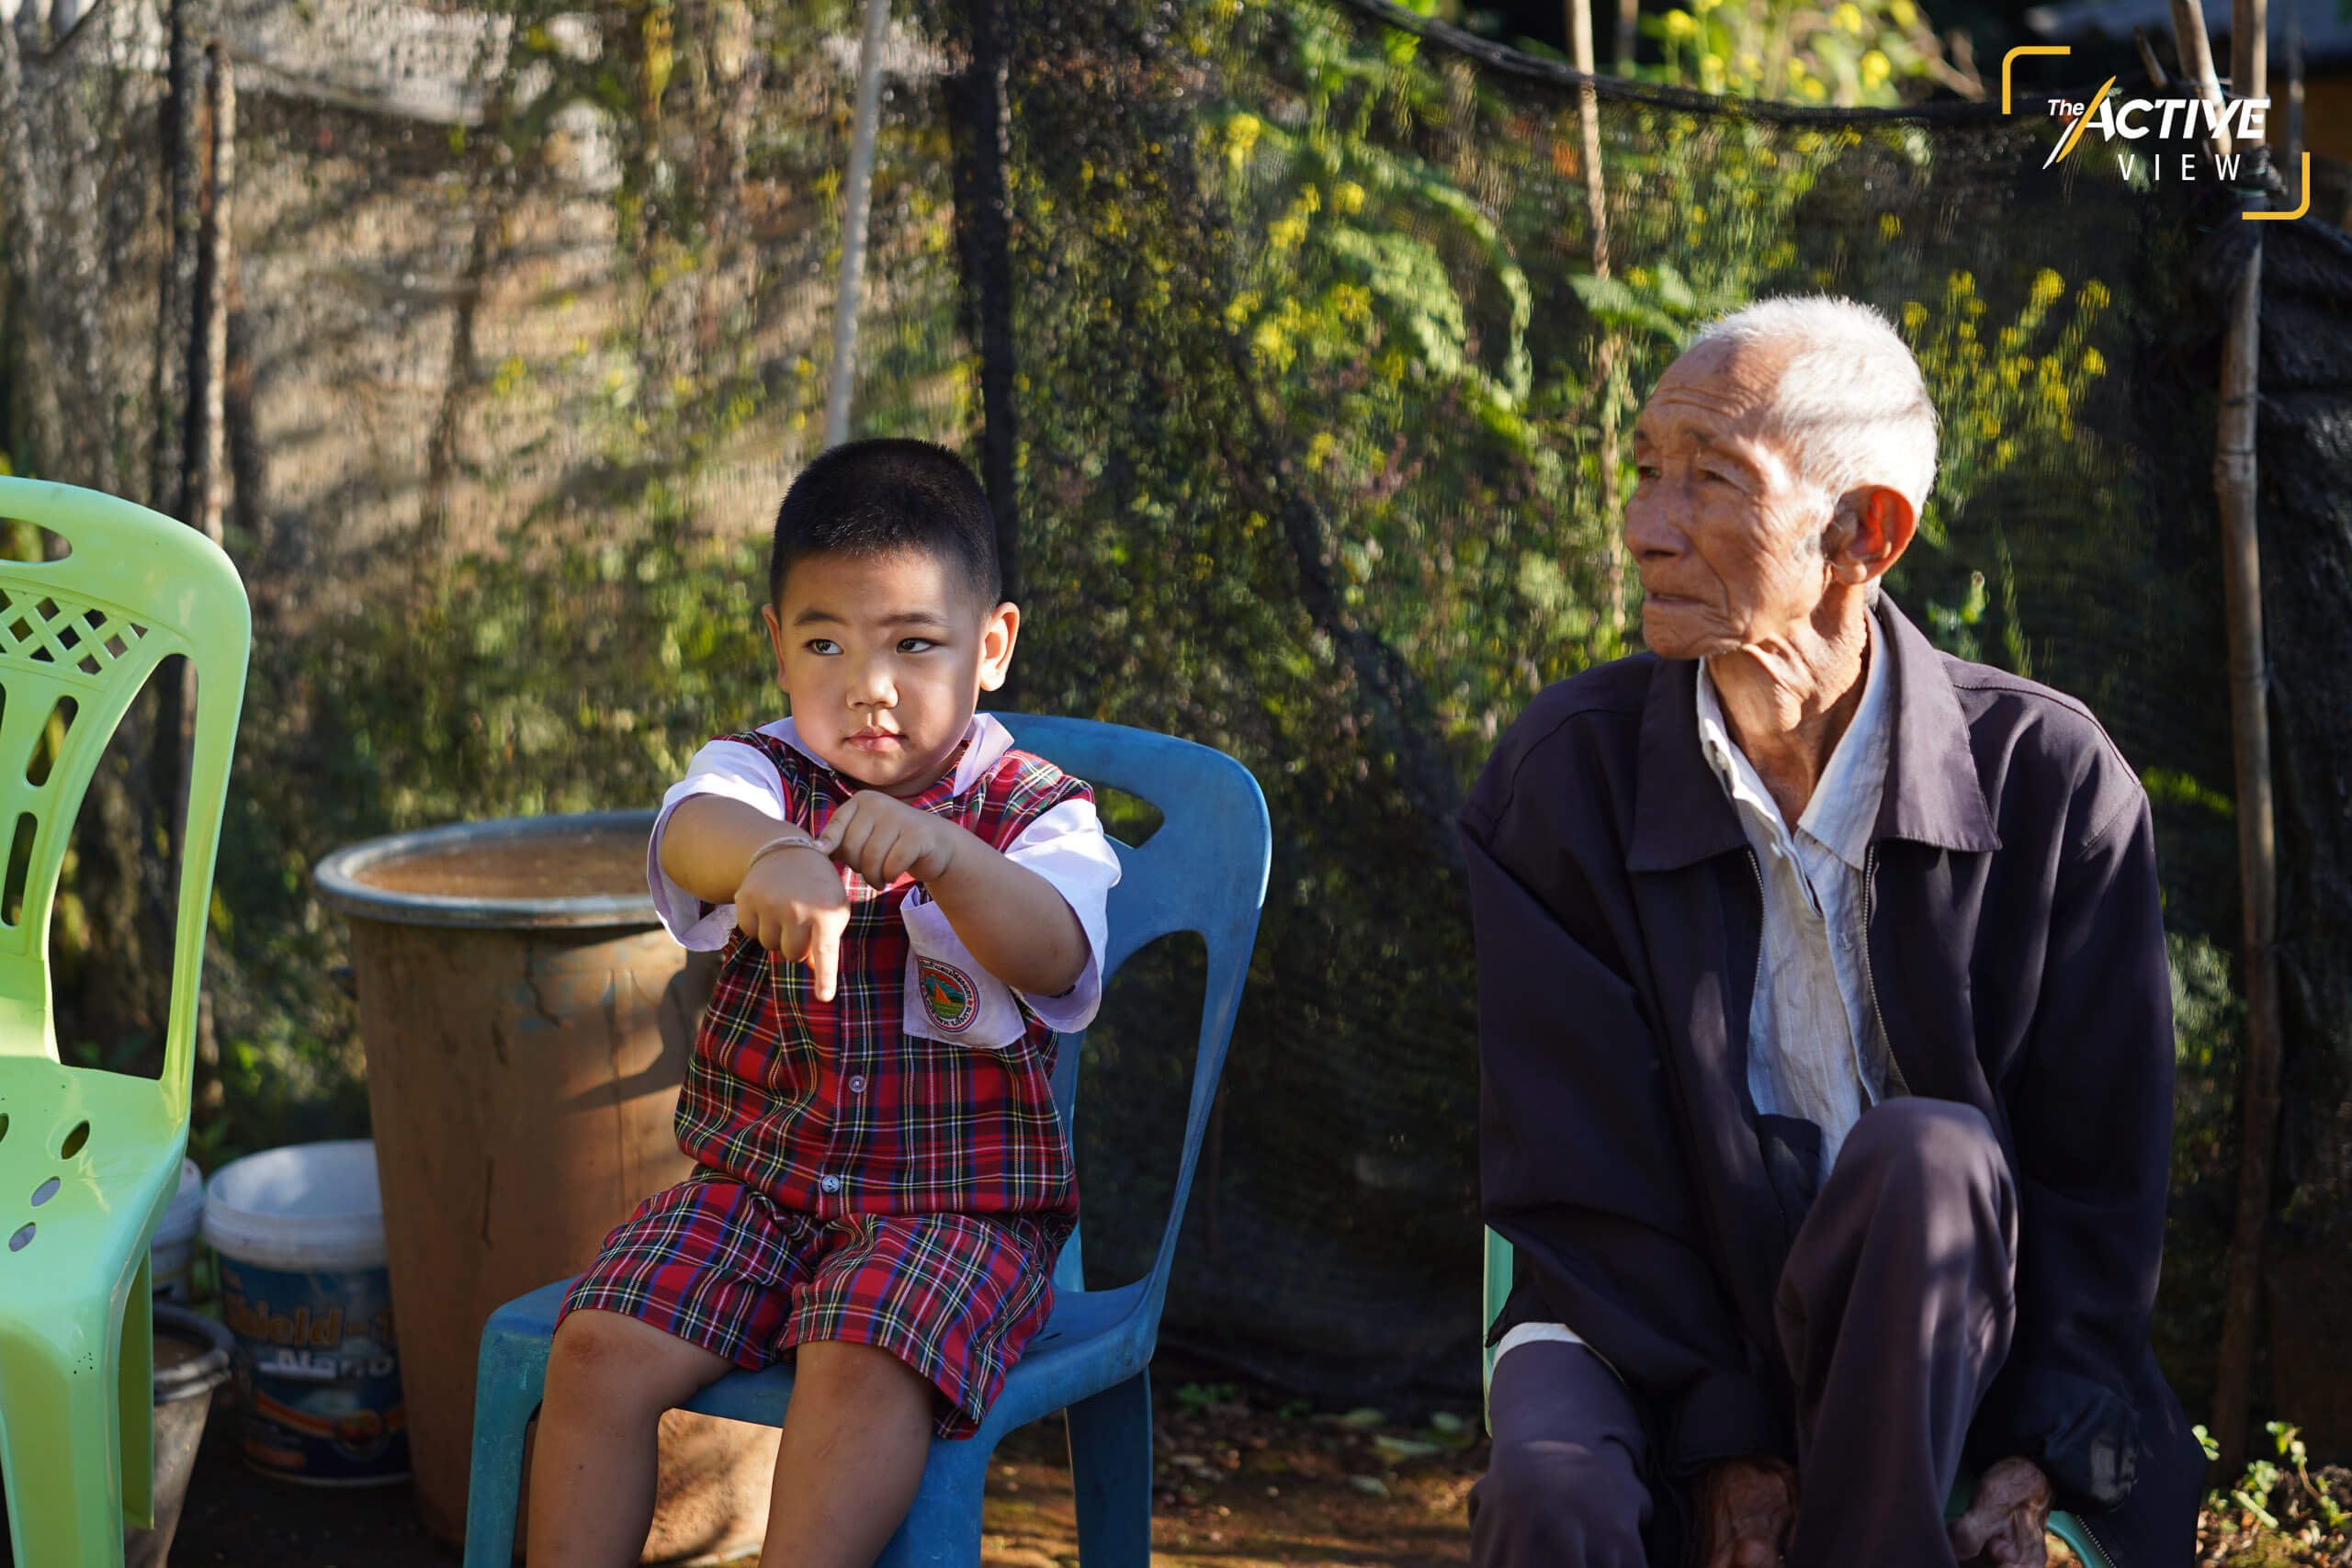 เด็กชายสัญชาติไทยคนนี้ ยังมีปู่เป็นคนไร้สัญชาติ ผู้เฒ่าที่นั่งอยู่ข้างเด็กชายคนนี้ยังรอการพิสูจน์เพื่อแปลงสัญชาติแม้ว่าจะมีผู้เฒ่าที่นำร่องได้สัญชาติไทยไปก่อนหน้านี้แล้ว 14 คน นี่เป็นที่มาของข้อเสนอการแก้ปัญหาผู้เฒ่าไร้สัญชาติระยะยาวควรแยกกฎหมายการแปลงสัญชาติแก่คนกลุ่มนี้โดยเฉพาะ 